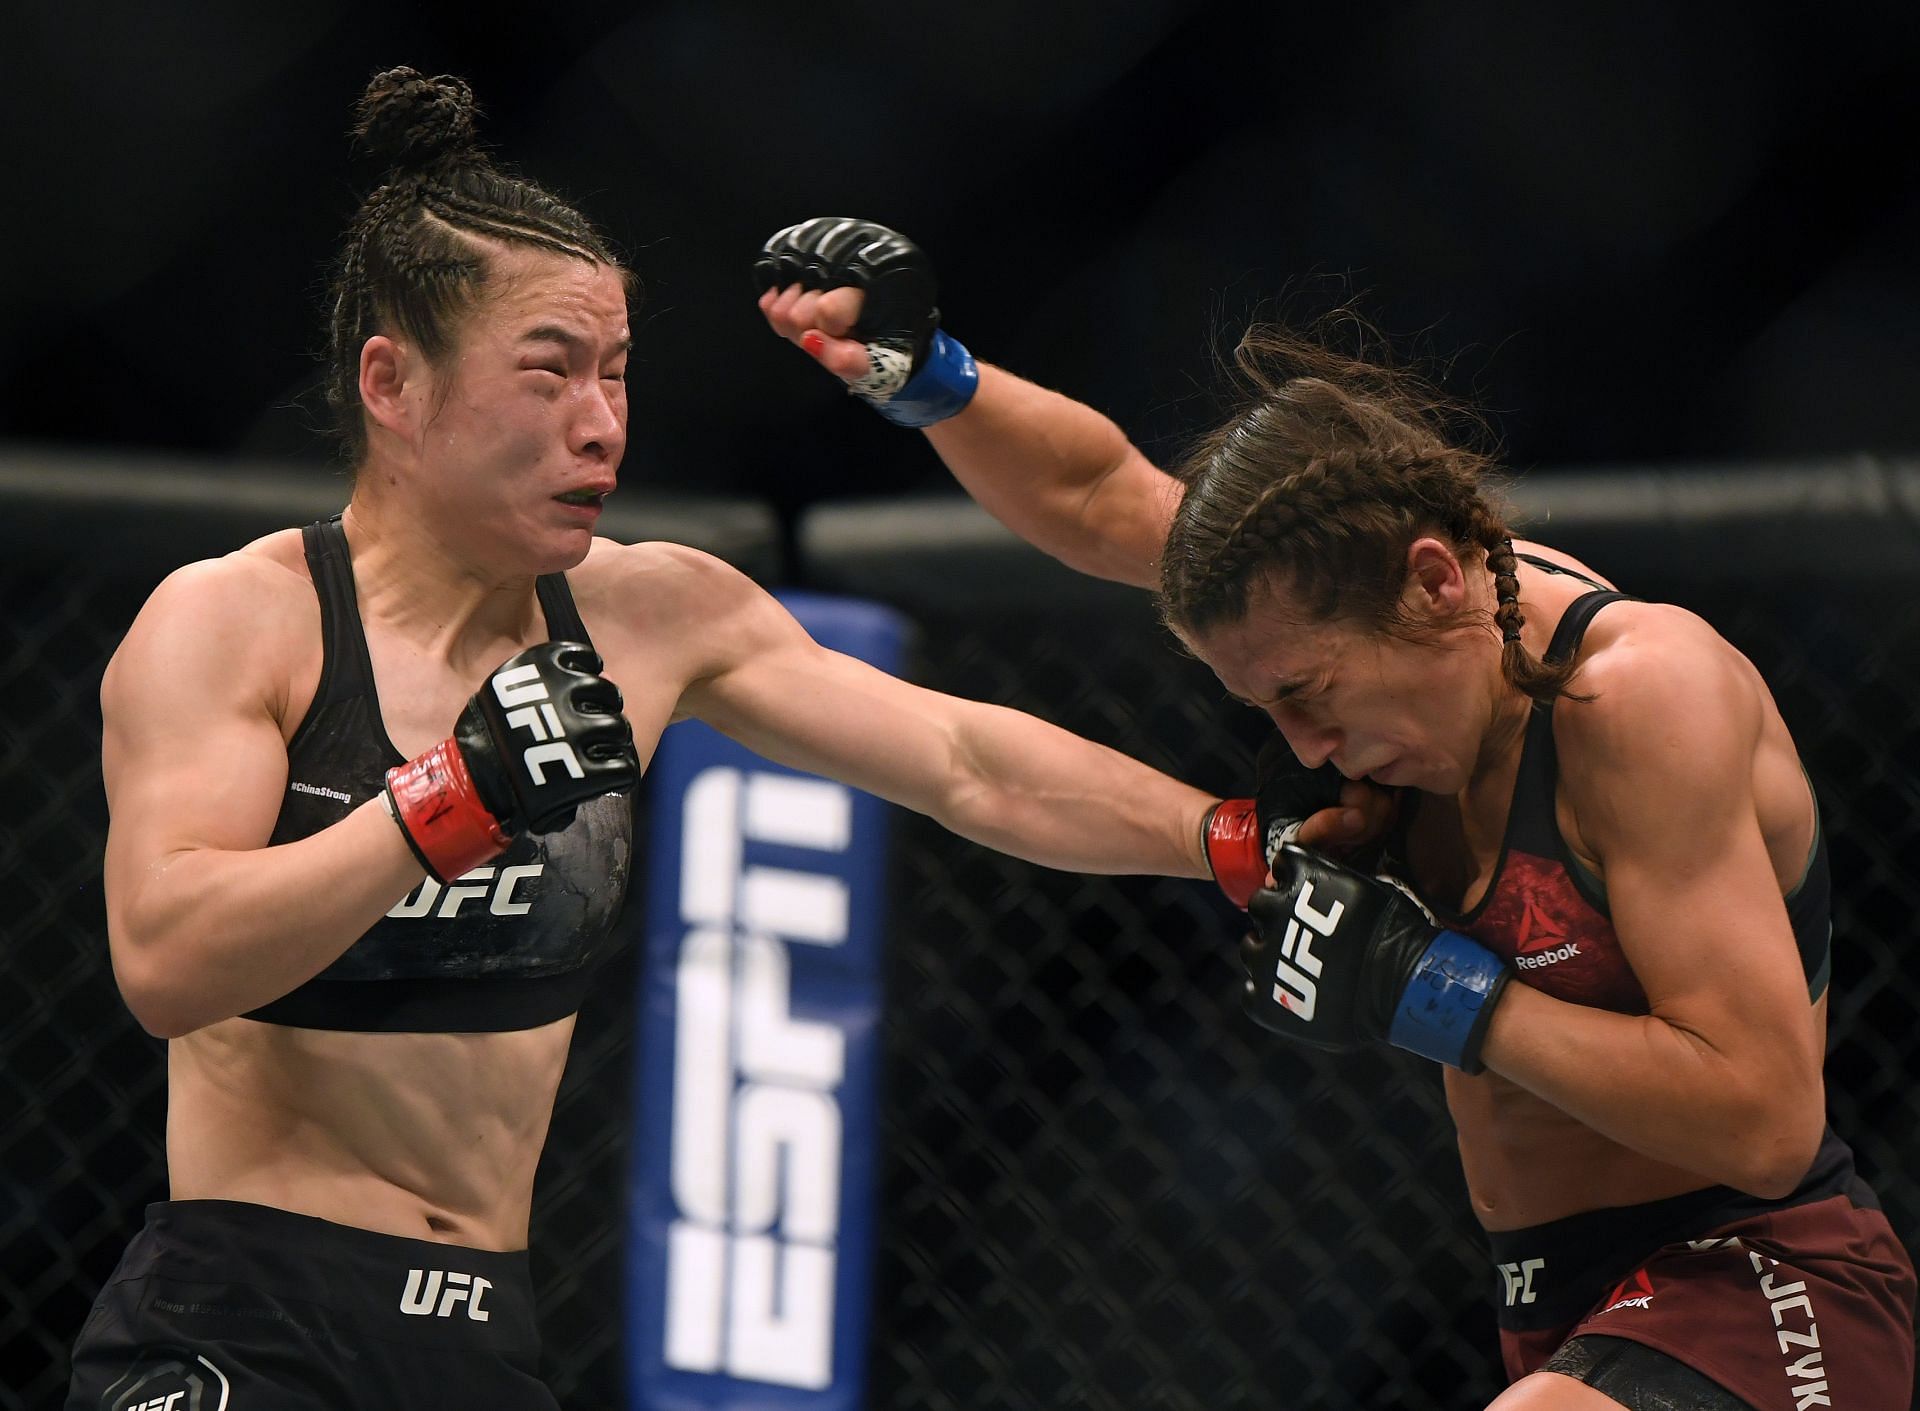 UFC 248: Zhang Weili (left) vs. Joanna Jedrzejczyk (right)